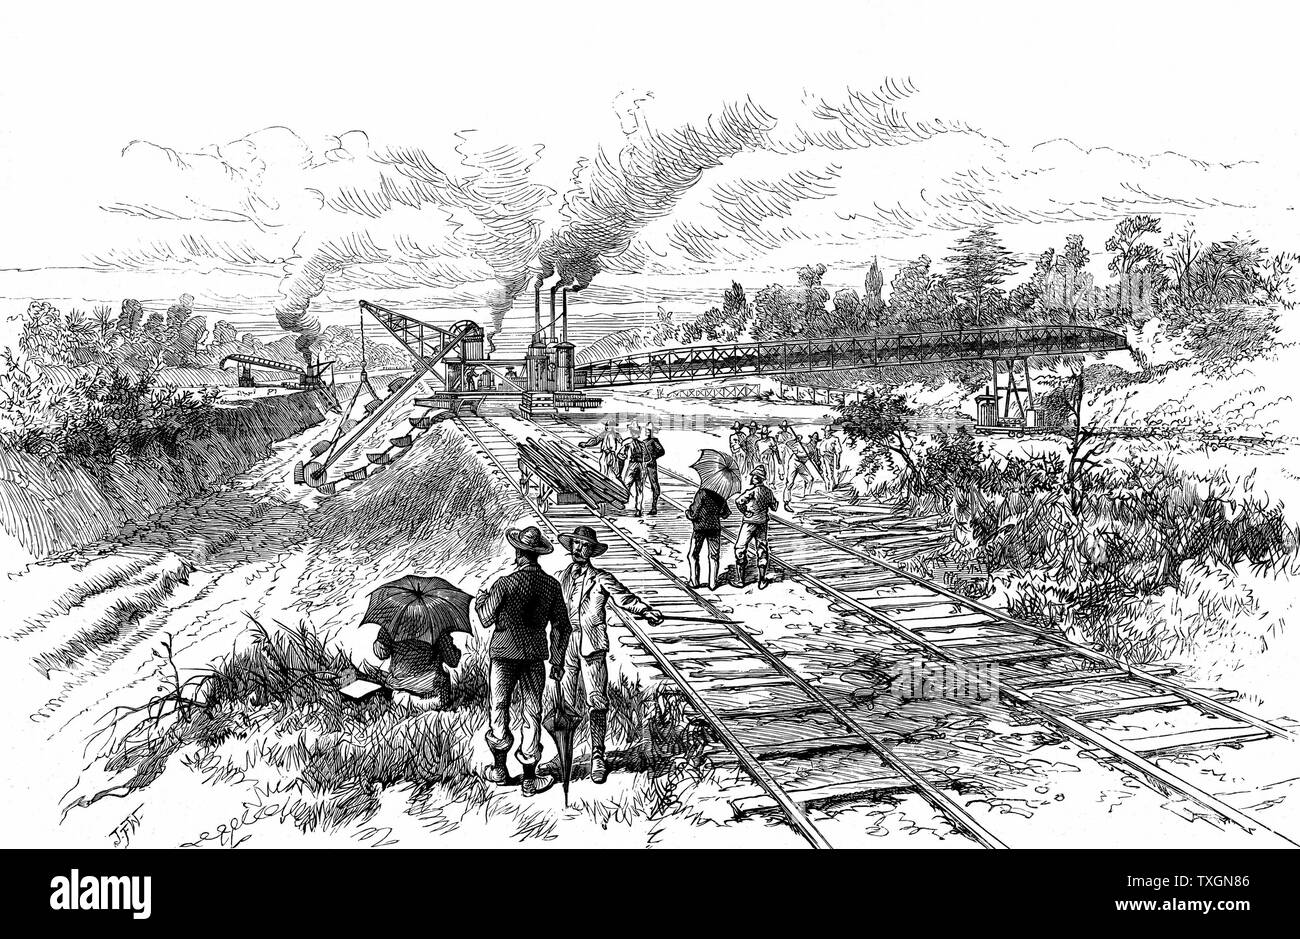 Canal de Panama : l'excavation de terre à la vapeur avec des excavateurs et des transporteurs à Tabemilla la terre au cours de la tentative de Lesseps pour creuser le canal de Panama. La gravure sur bois, 1888 Banque D'Images